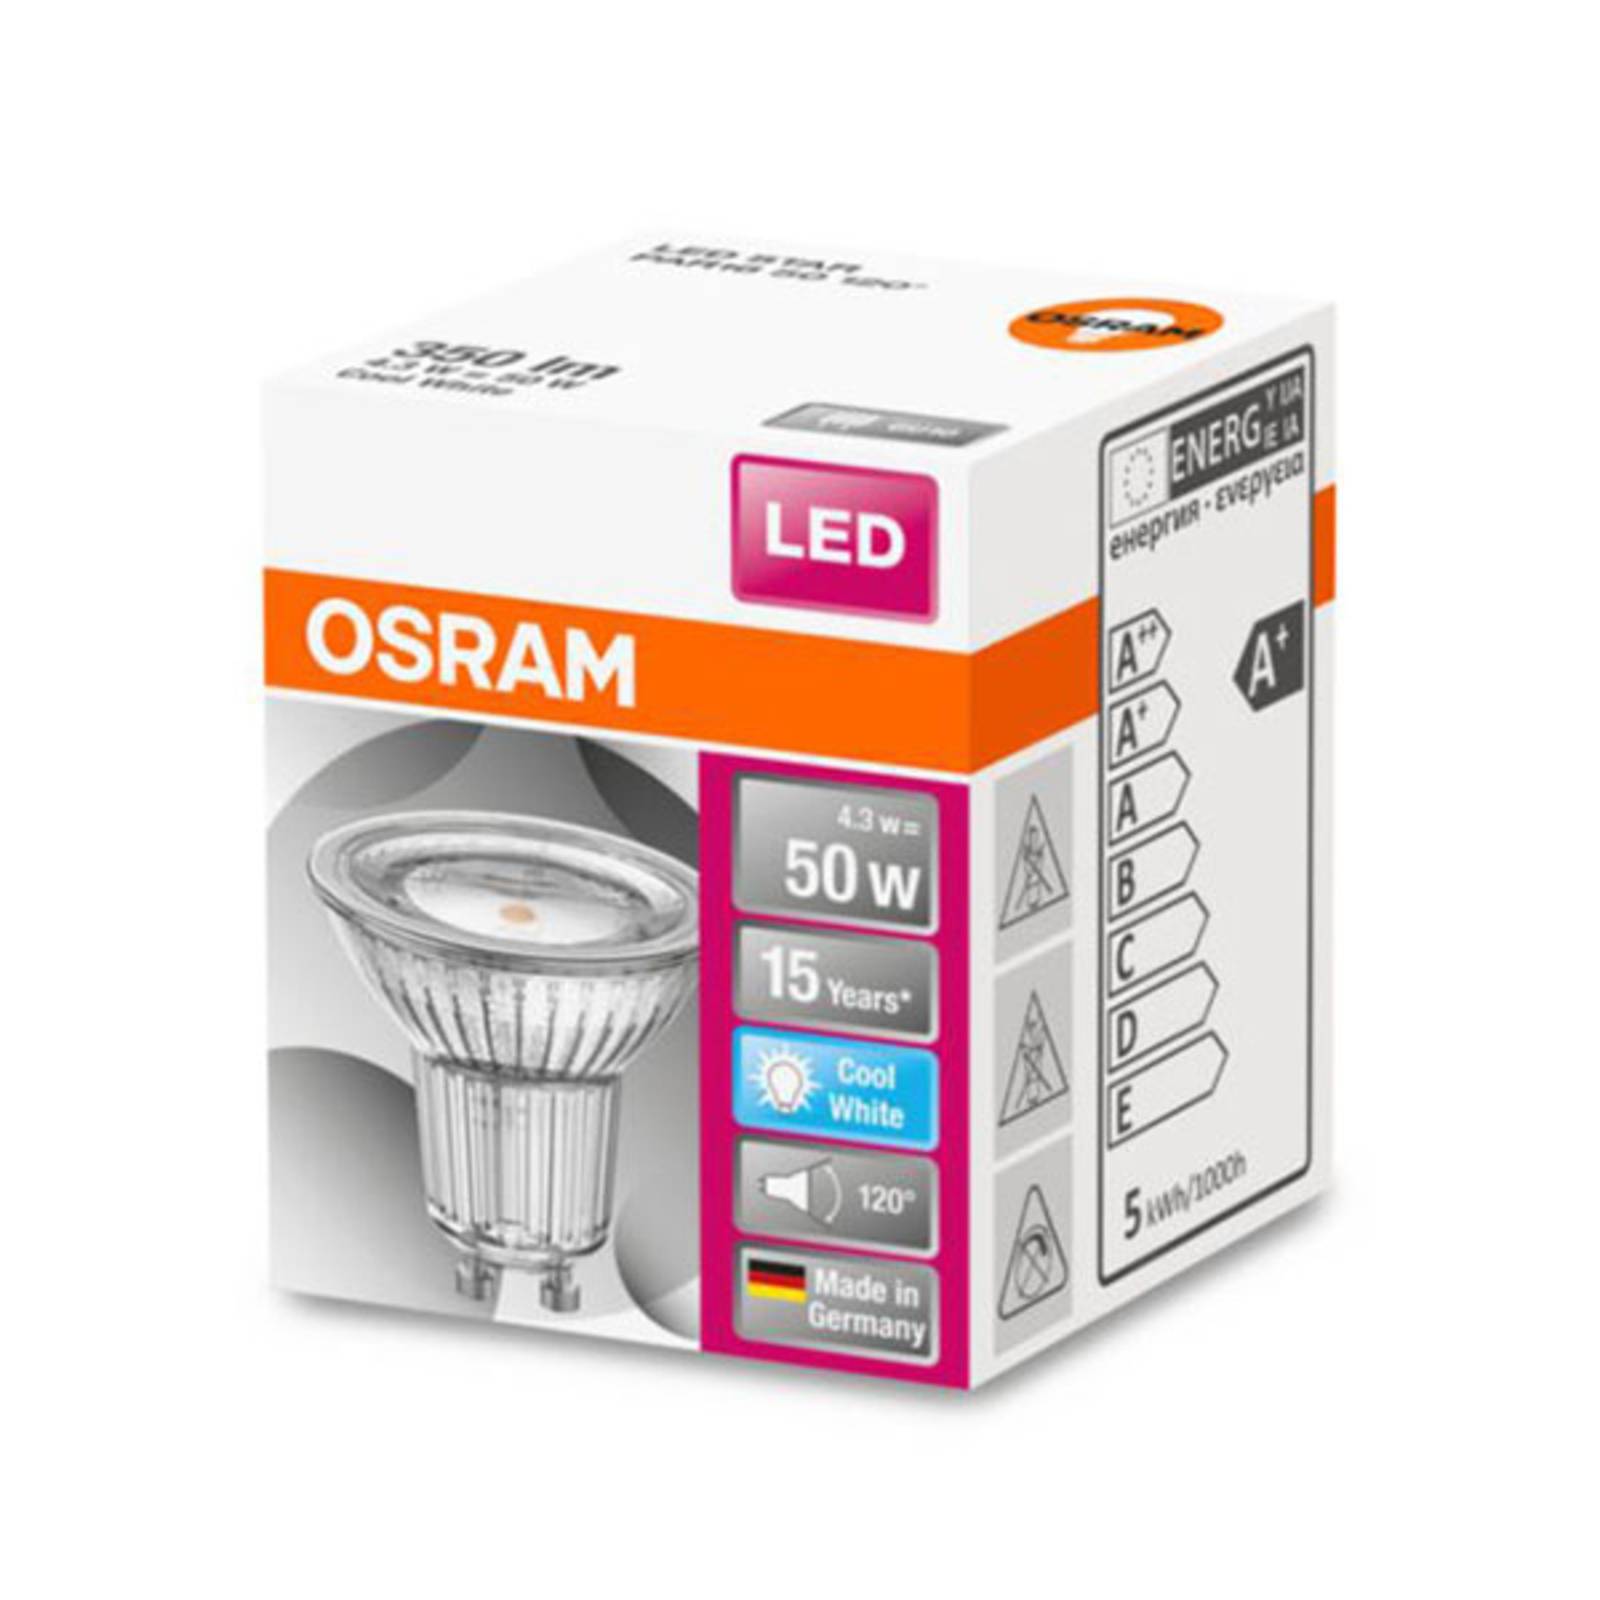 OSRAM LED-reflektor GU10 4,3W universalvit 120°